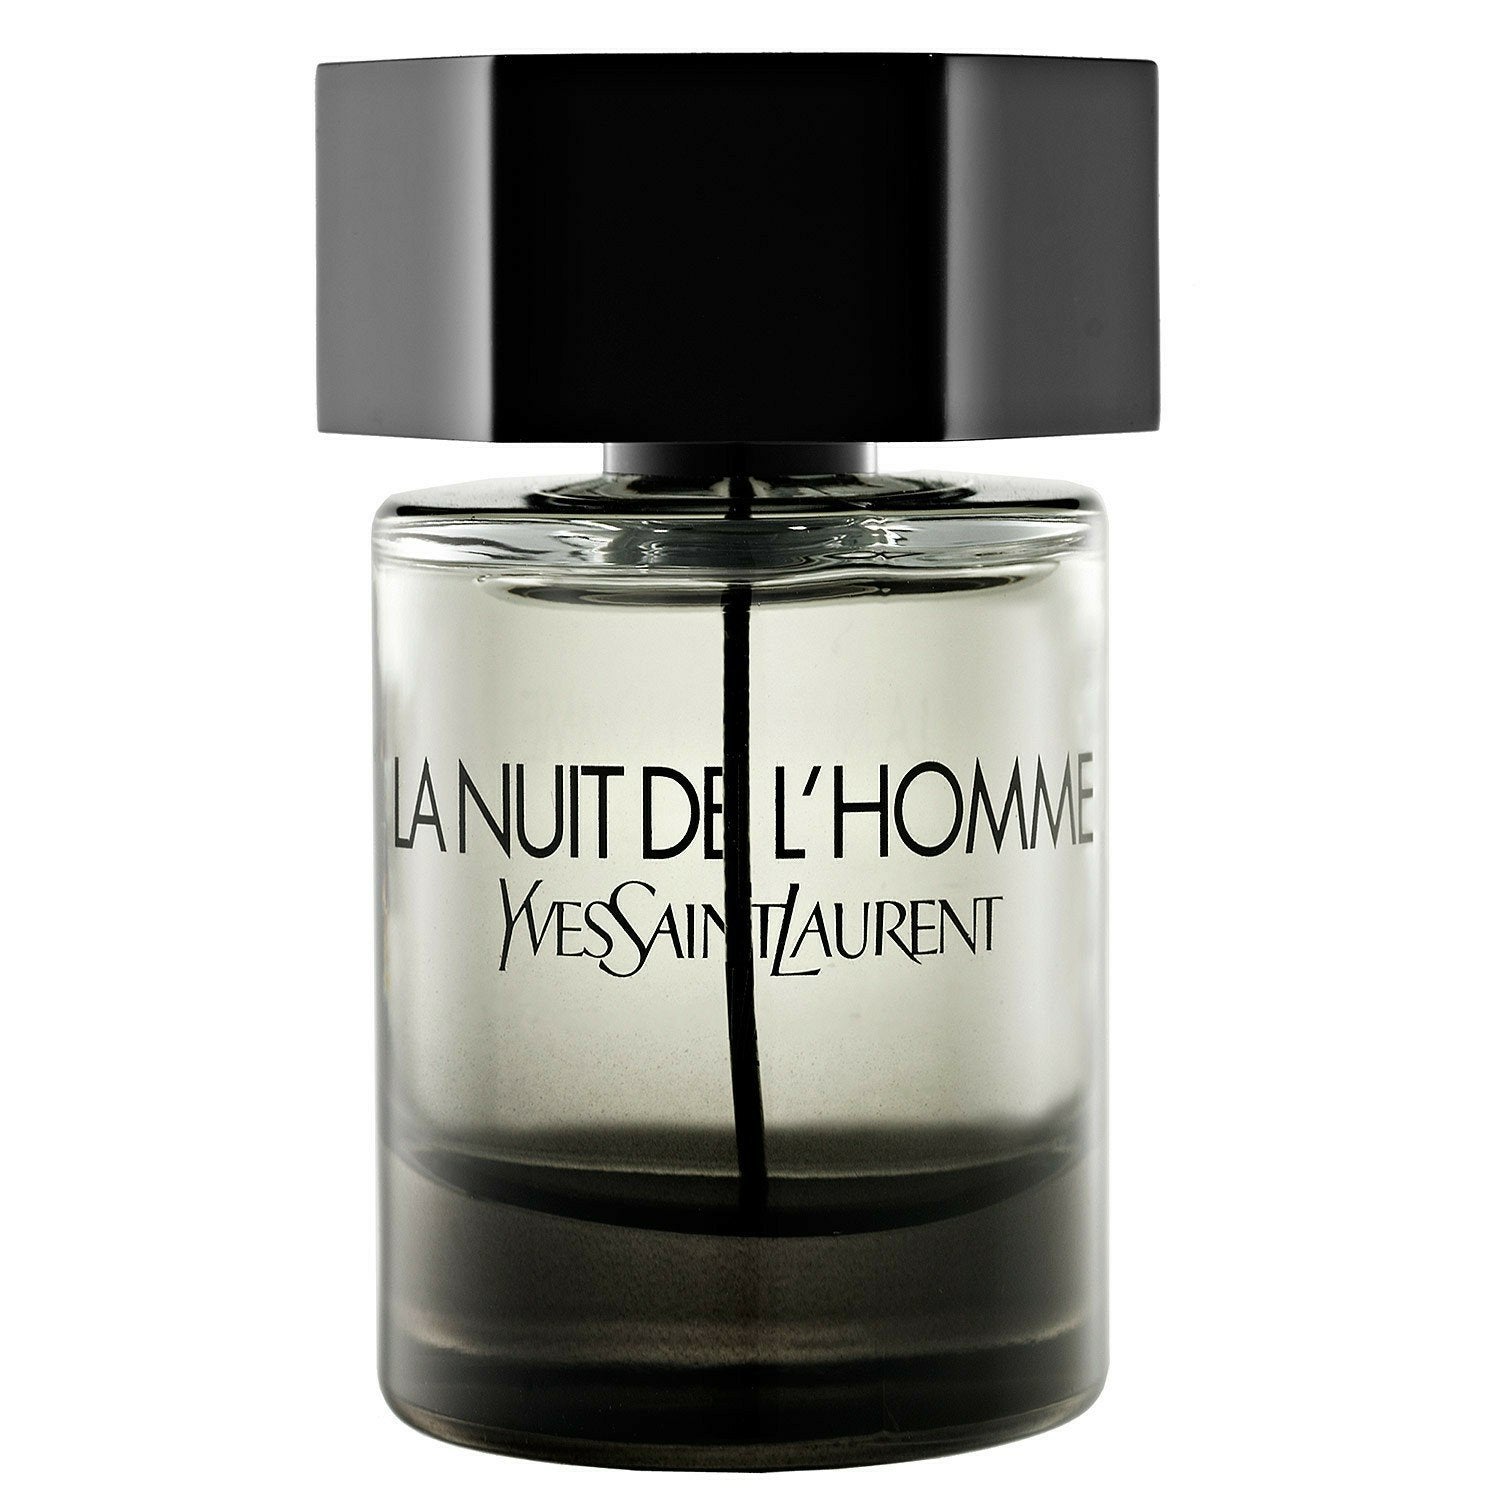 Rive Gauche Pour Homme - Yves Saint Laurent (YSL) - Maximum Fragrance